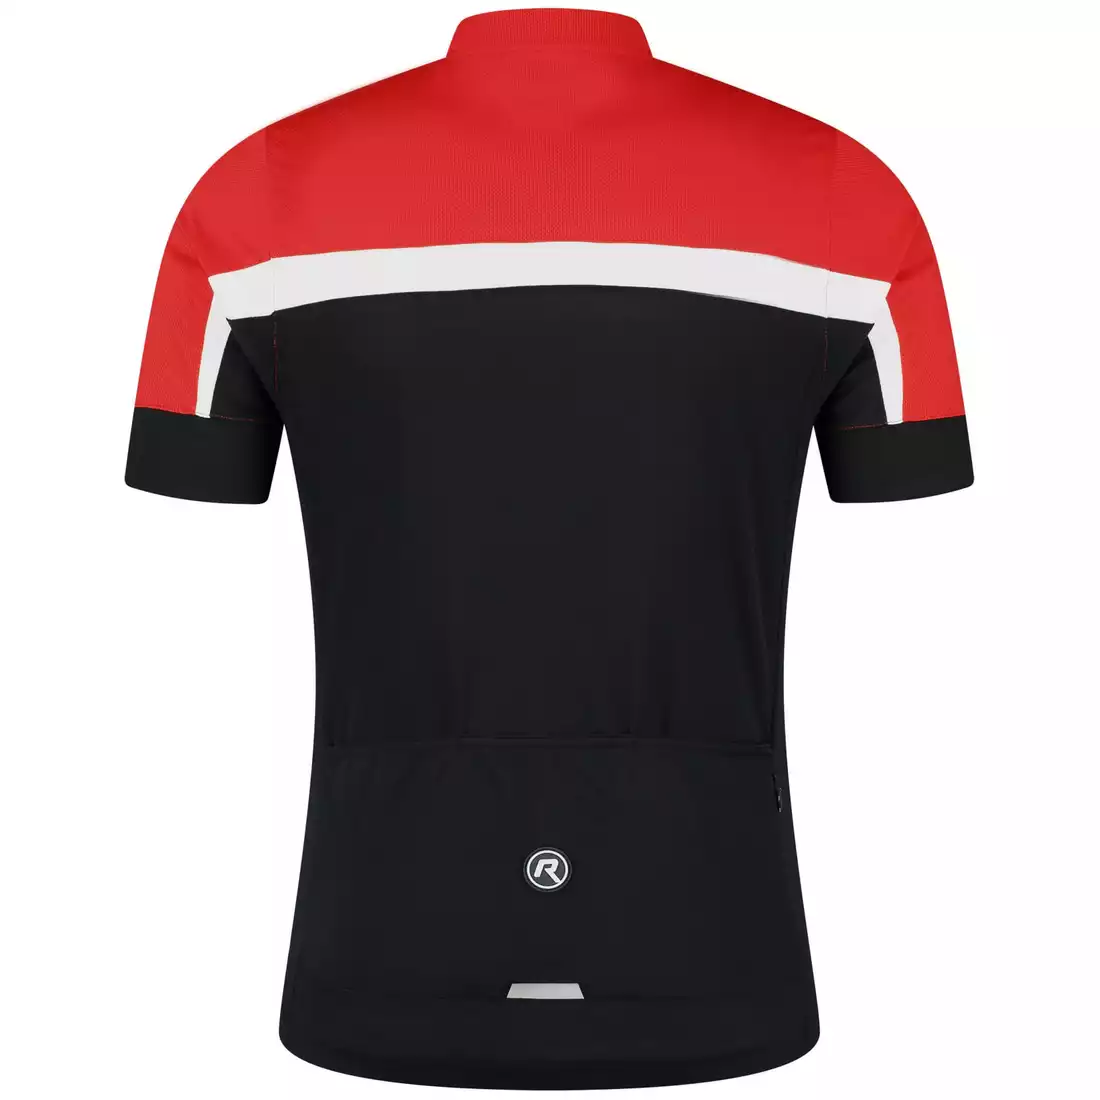 Rogelli COURSE pánský cyklistický dres, černá a červená